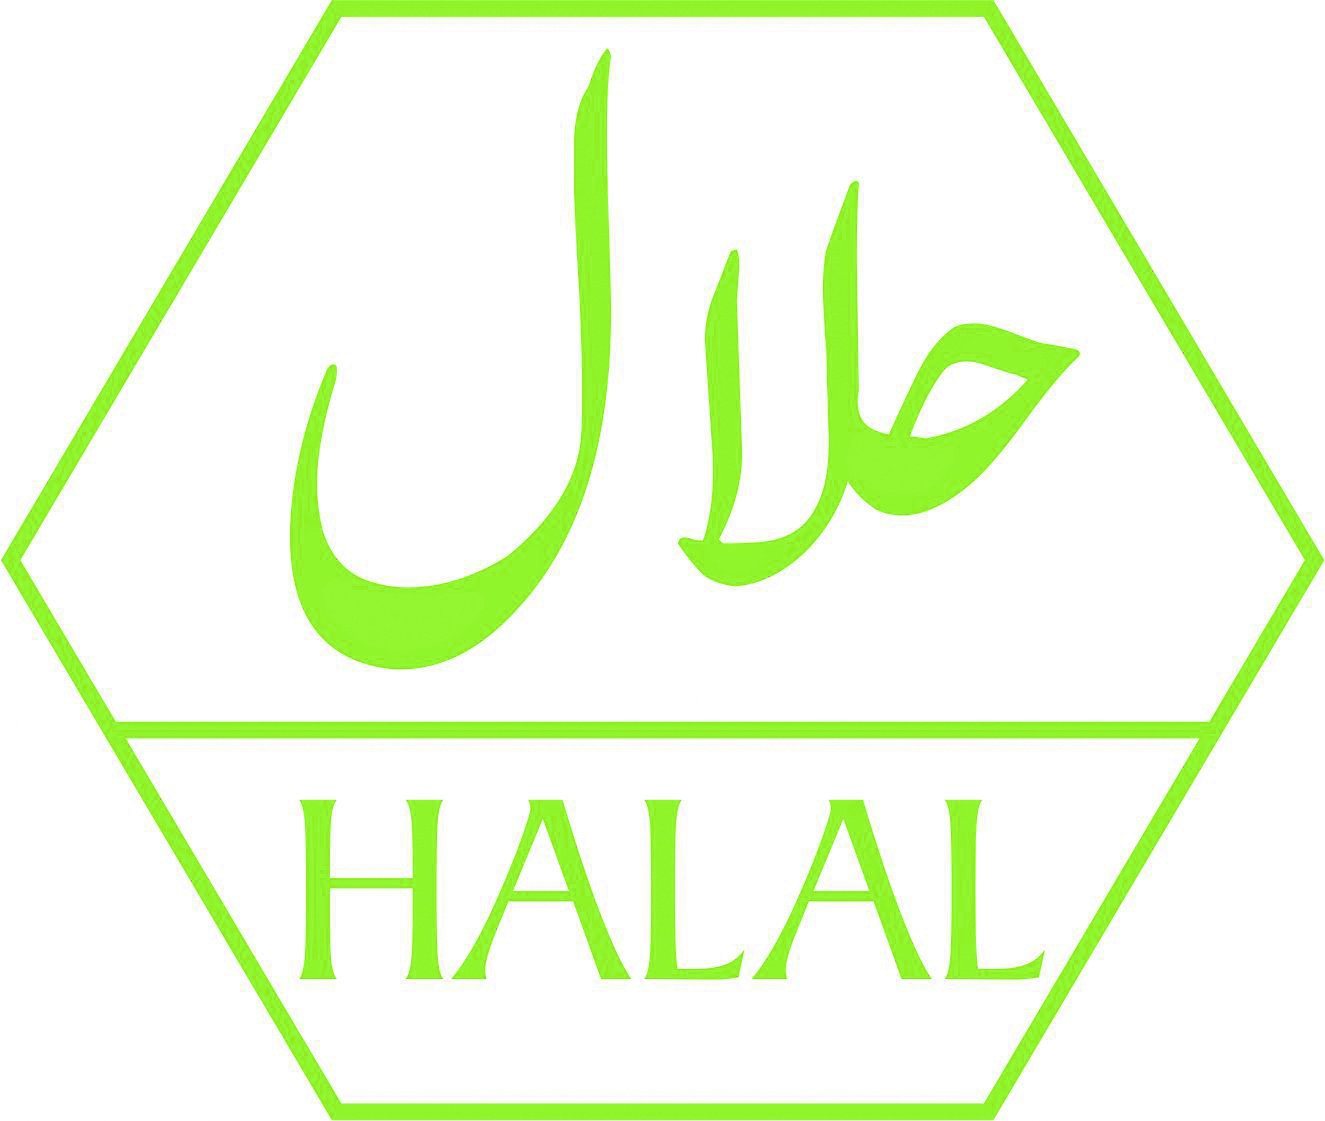 Халяль оренбург. Халяль. Значок Халяль. Логотип халал. Halal Халяль logo.